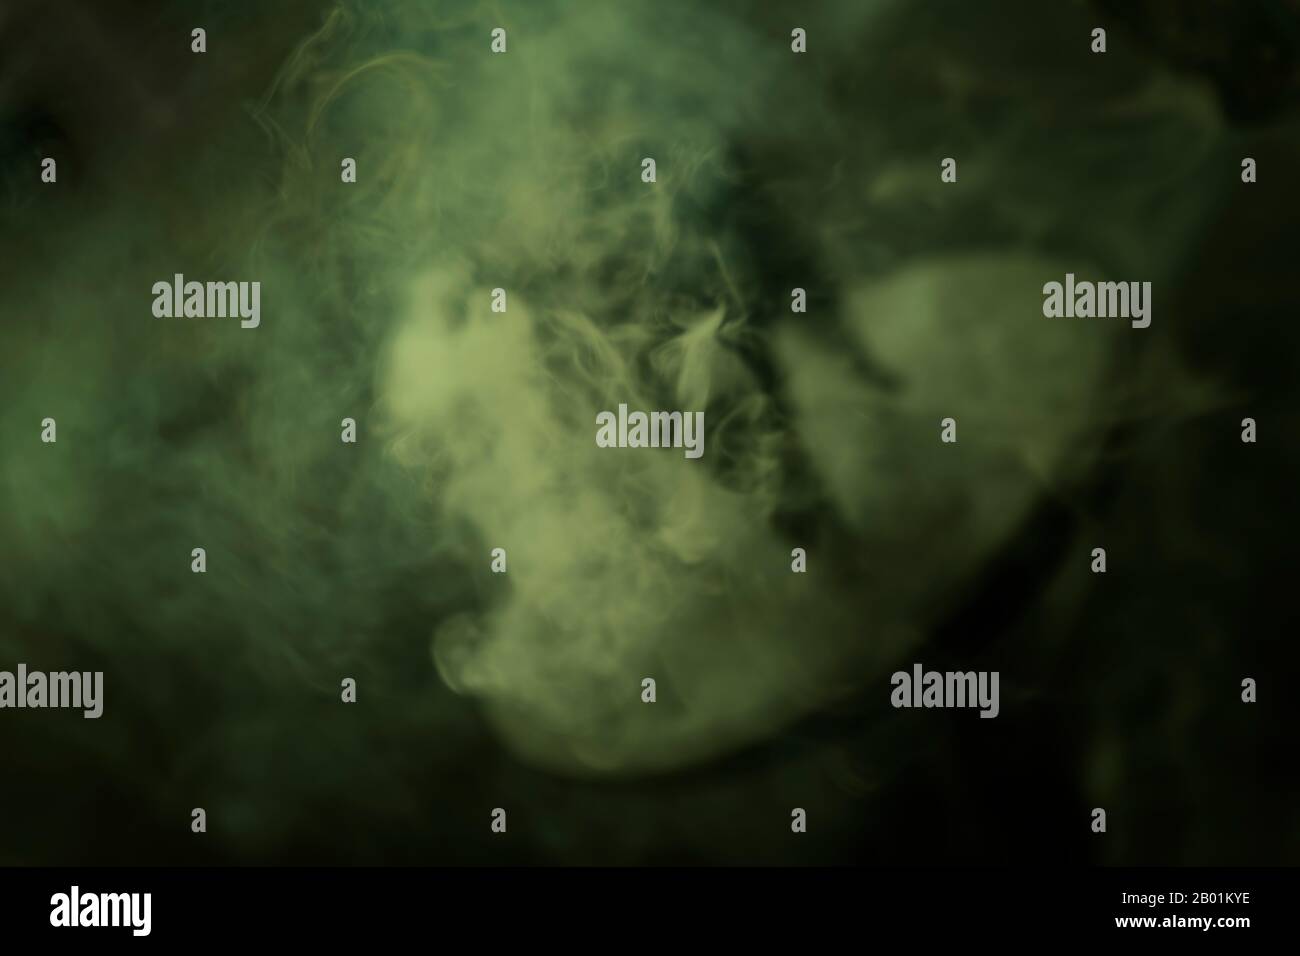 Flou, vert menthe, wisp de fumée de l'encens brûlant. Image de texture d'arrière-plan souple et floue. Banque D'Images